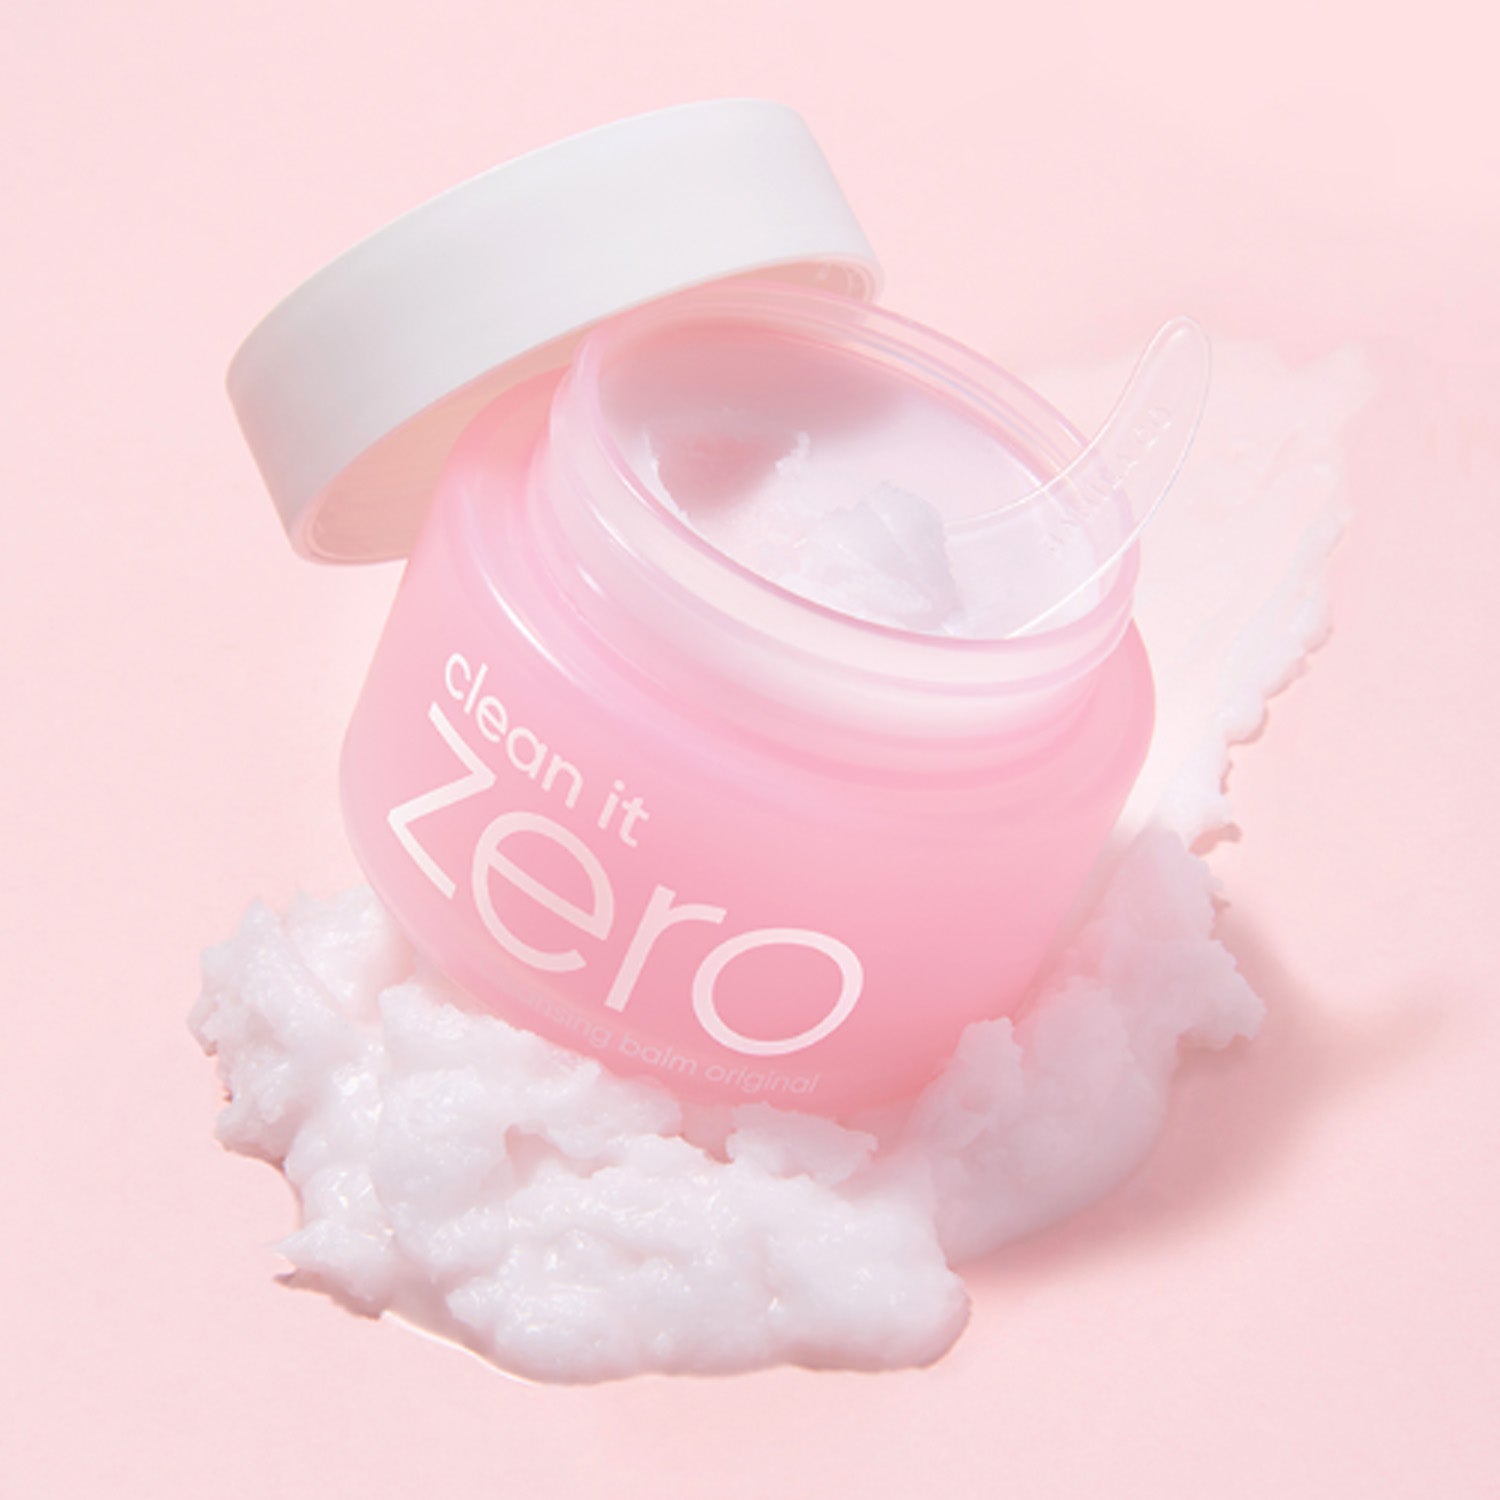 Clean It Zero Original Cleansing Balm – Best Korean Skincare